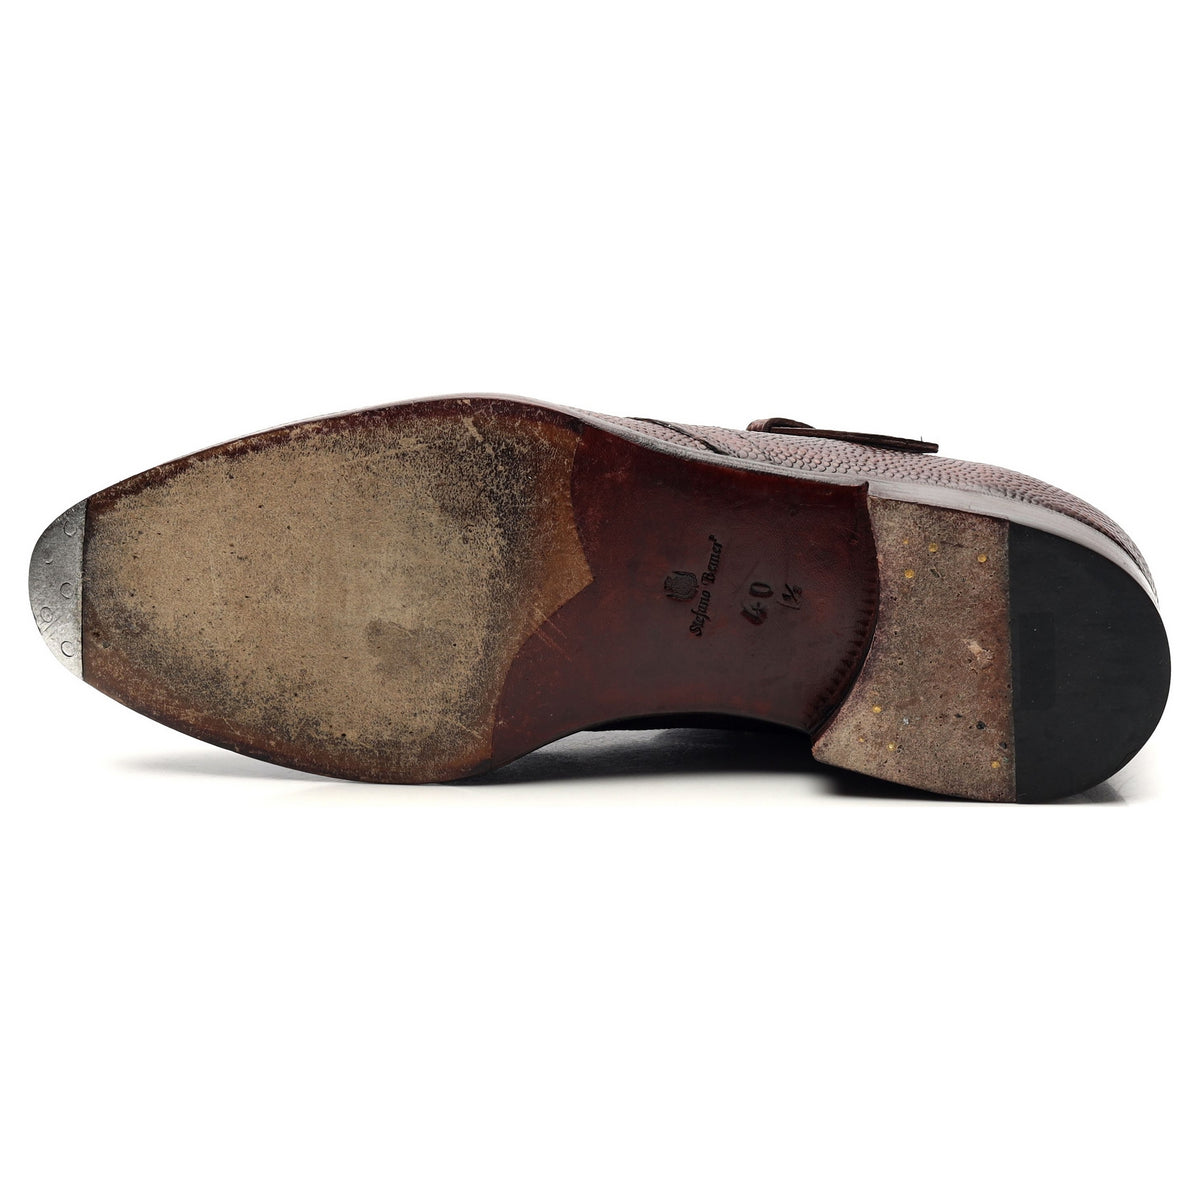 Dark Brown Monk Strap Boots UK 6.5 EU 40.5